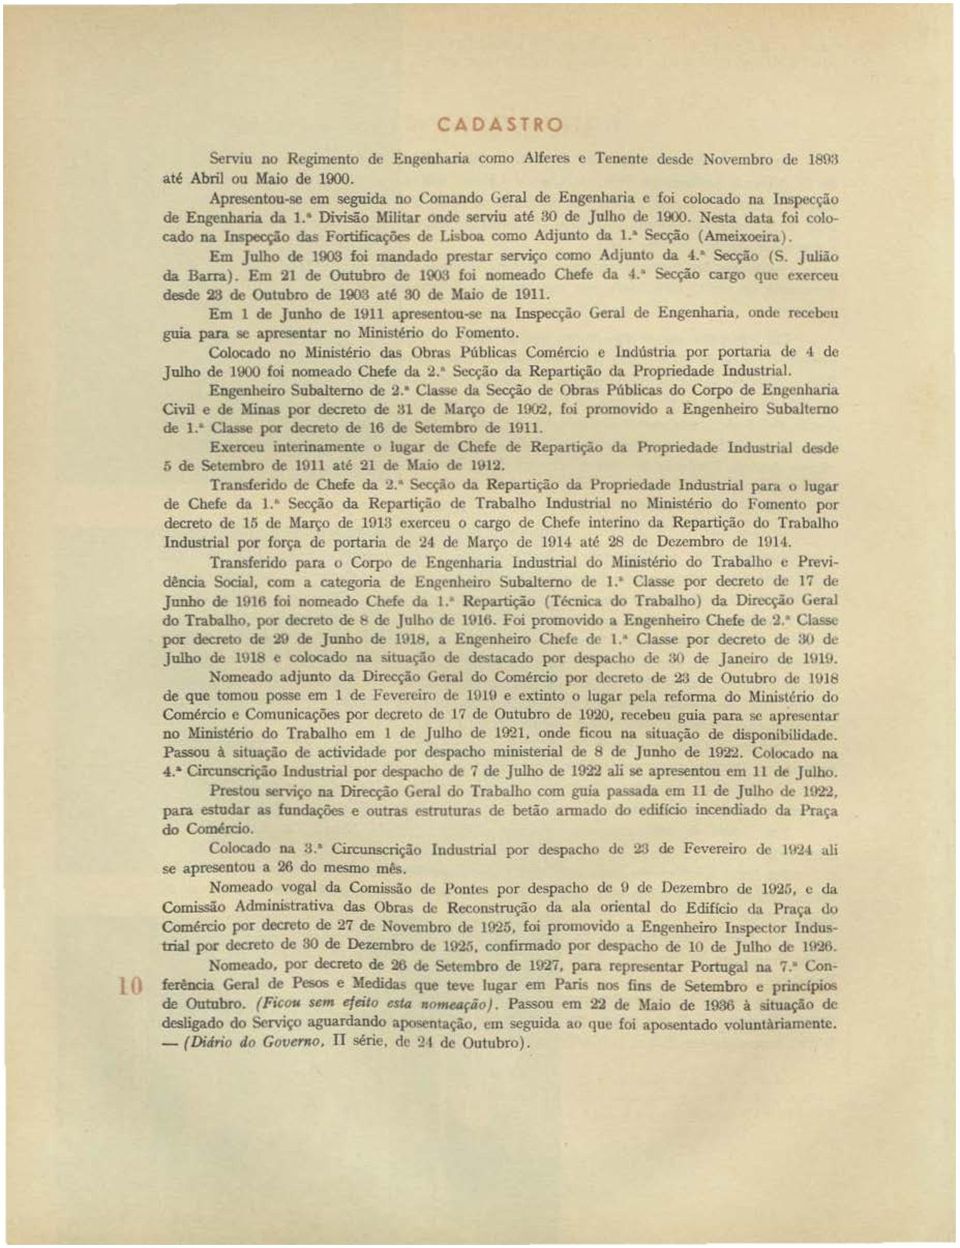 ' Fortificações d<' Li'boa como Adjunto da 1. Secção (Ameixoeira) Em Julho de 1900 foi mandado pre:;tar serviço como Adjunto da 4.ª Secção (S. Julião da Bana).